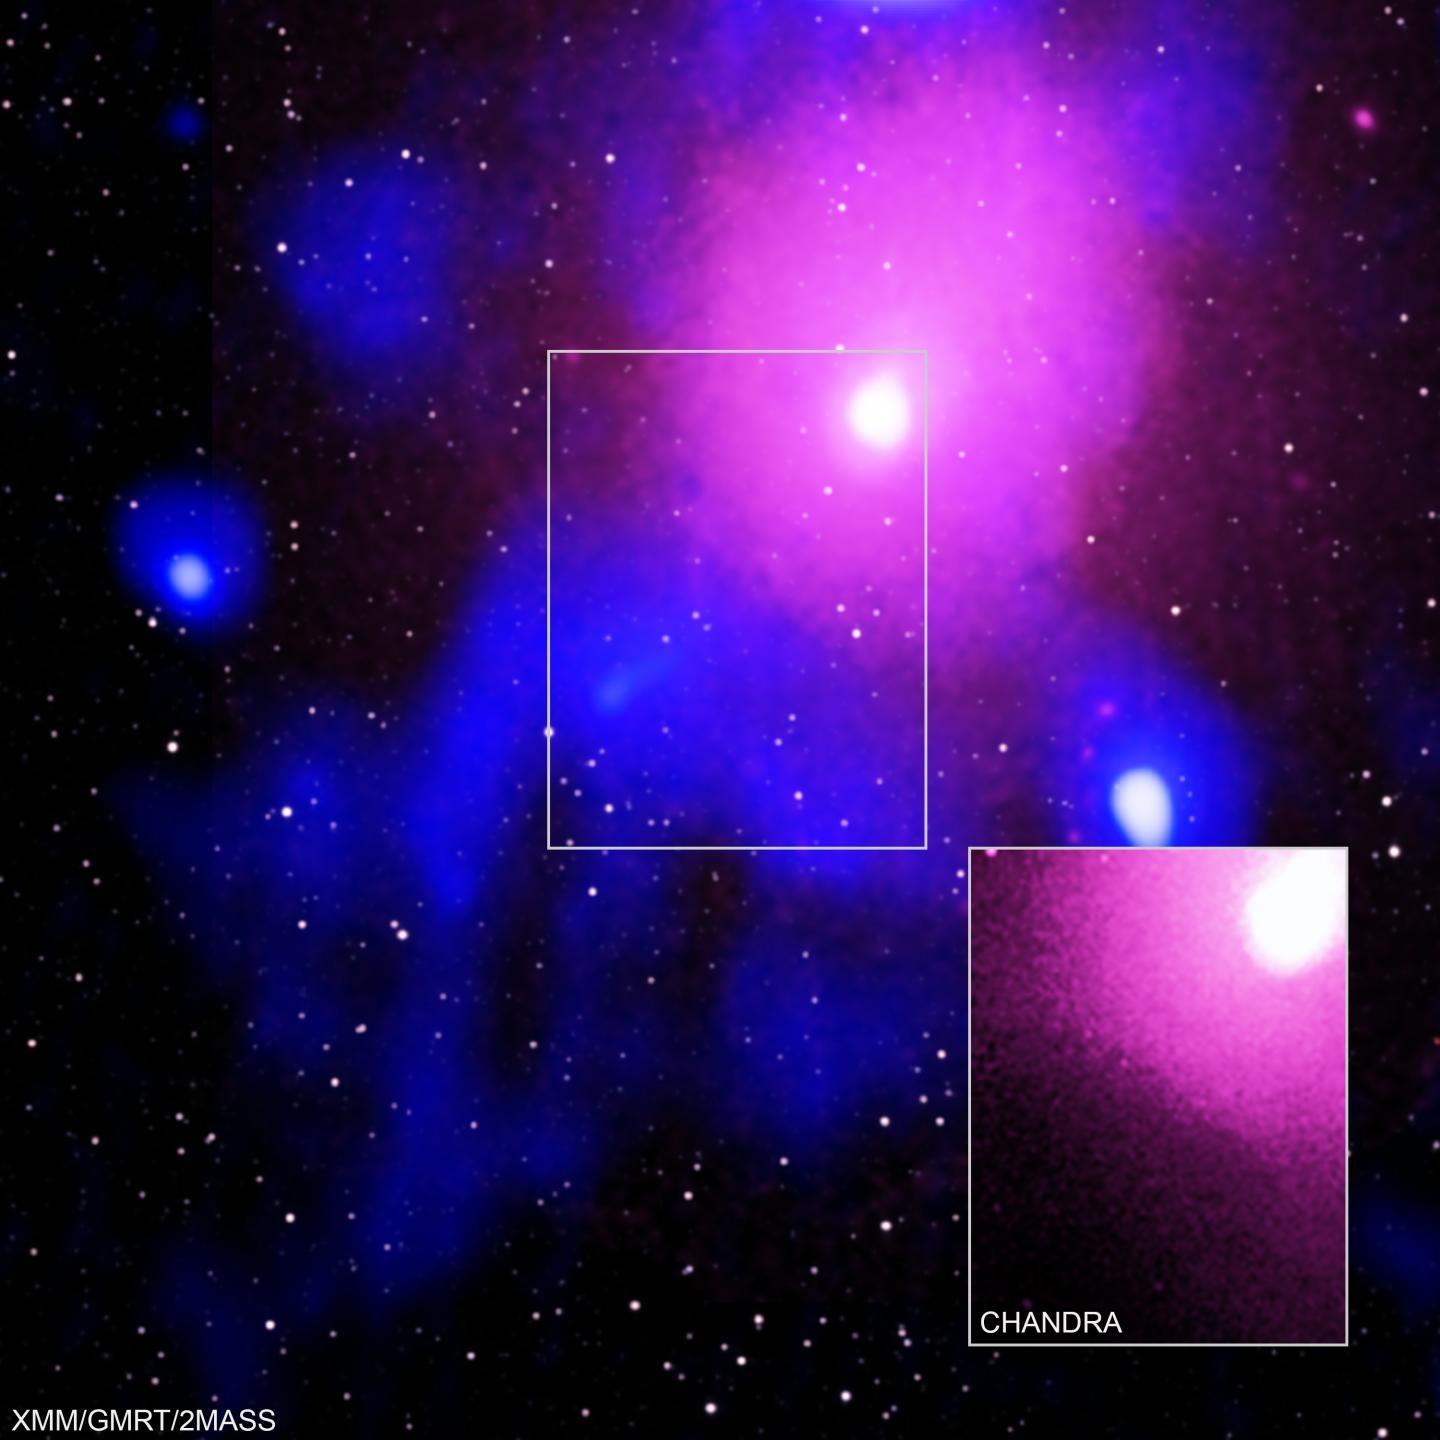 LETUSAN yang sangat kuat ini terjadi di kluster galaksi Ophiuchus terletak sekitar 390 juta tahun cahaya dari Bumi.*